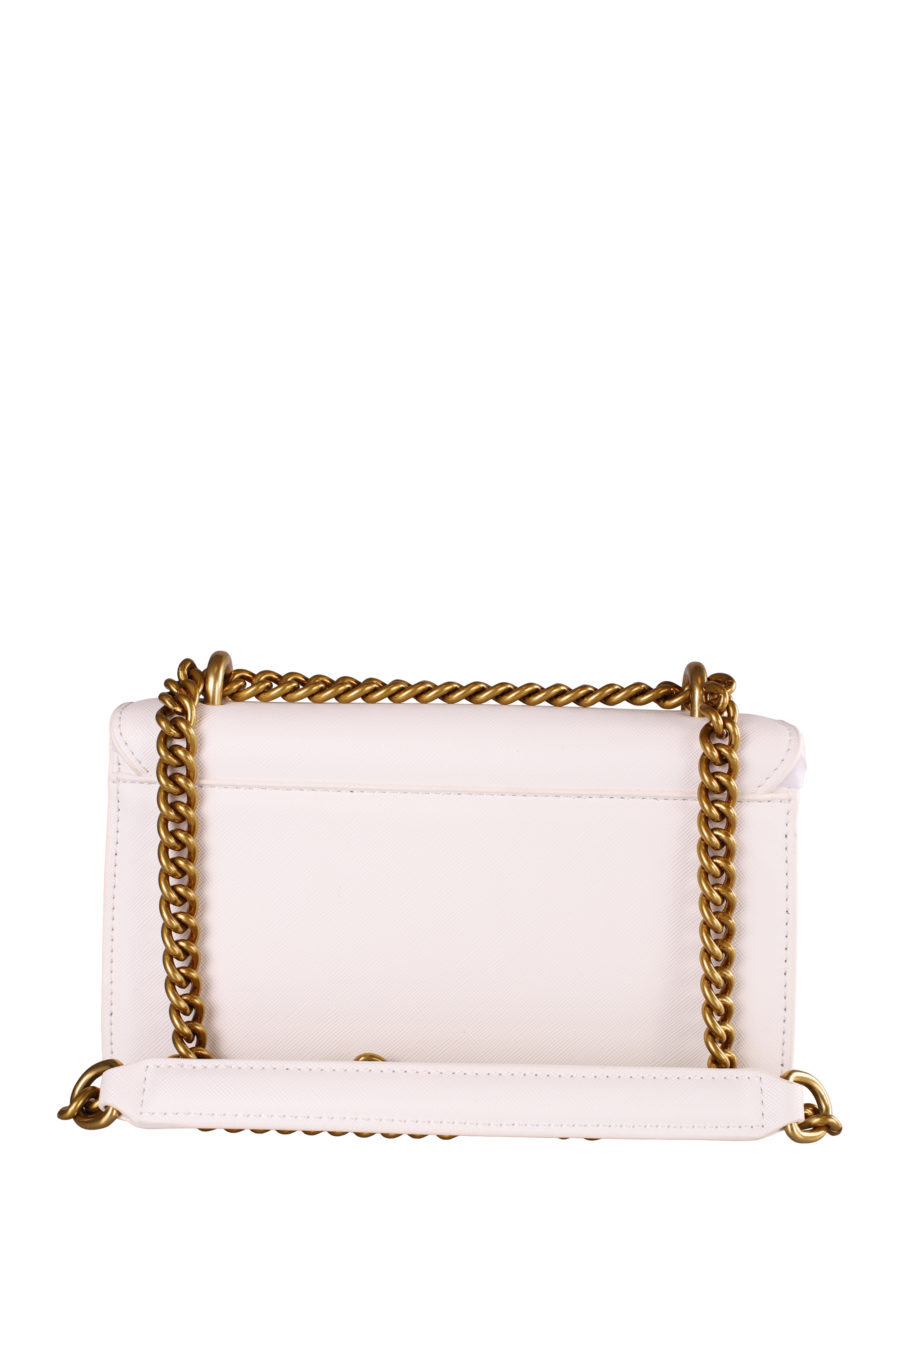 Bolso blanco con cadena y logo en dorado - IMG 4784